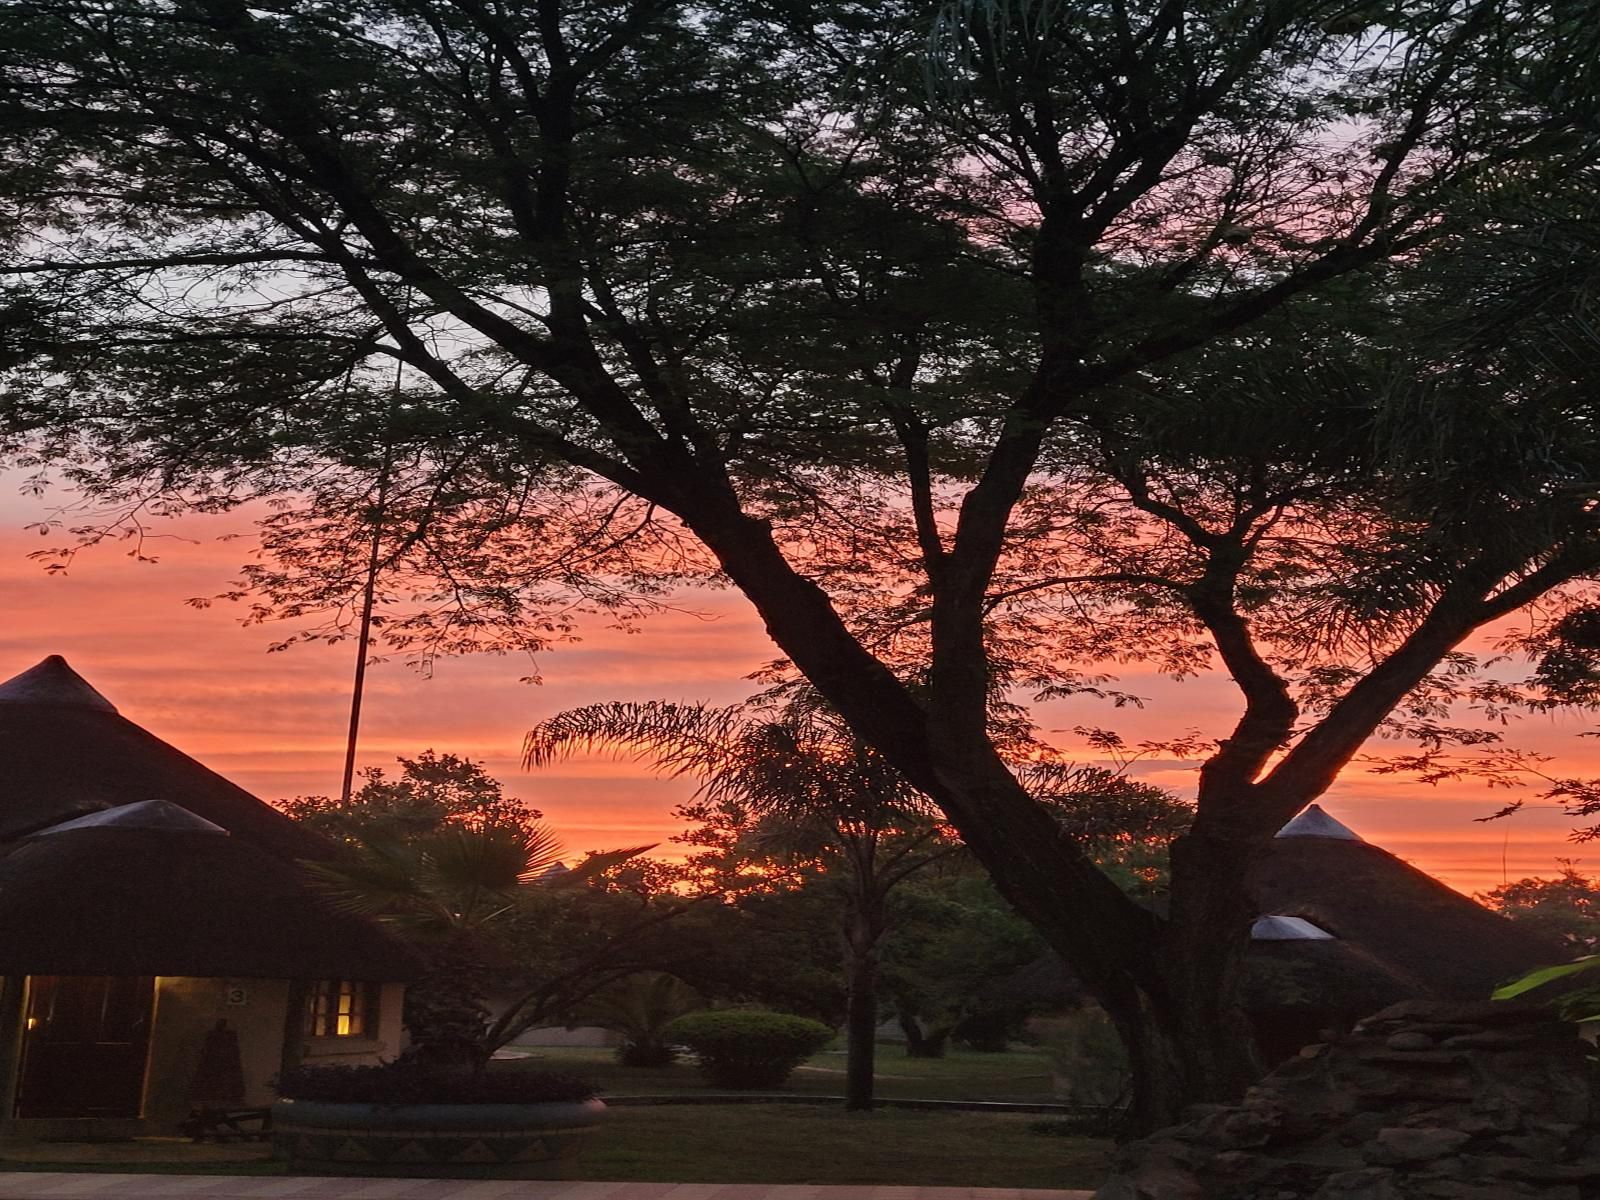 Das Landhaus Guest Lodge Dainfern Johannesburg Gauteng South Africa Sky, Nature, Framing, Sunset